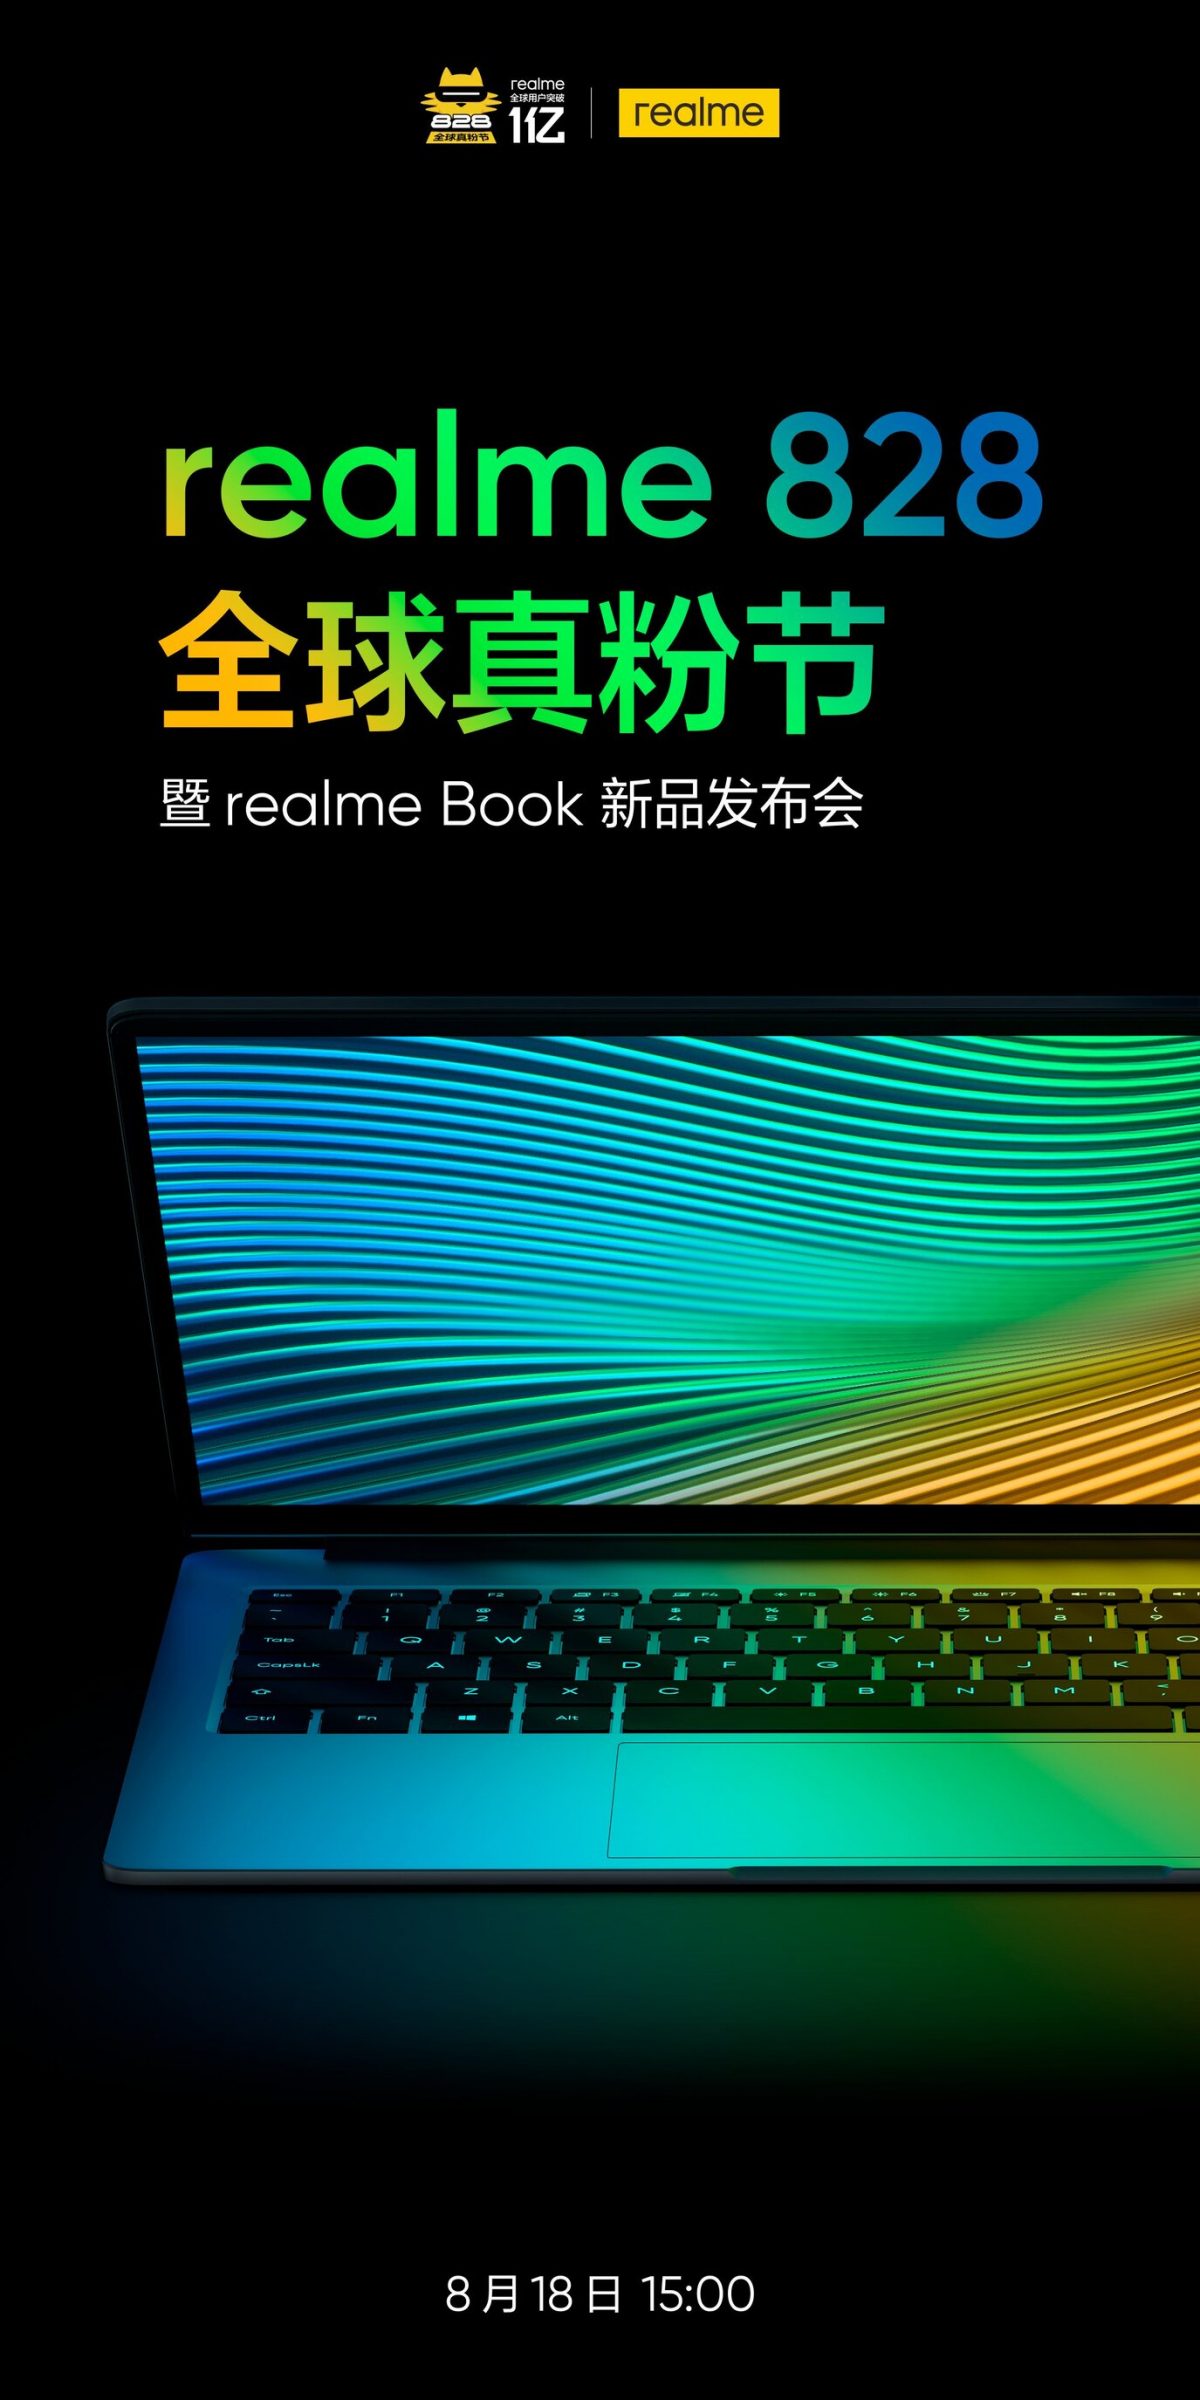 Realme раскрыла дату анонса своего первого ноутбука Realme Book